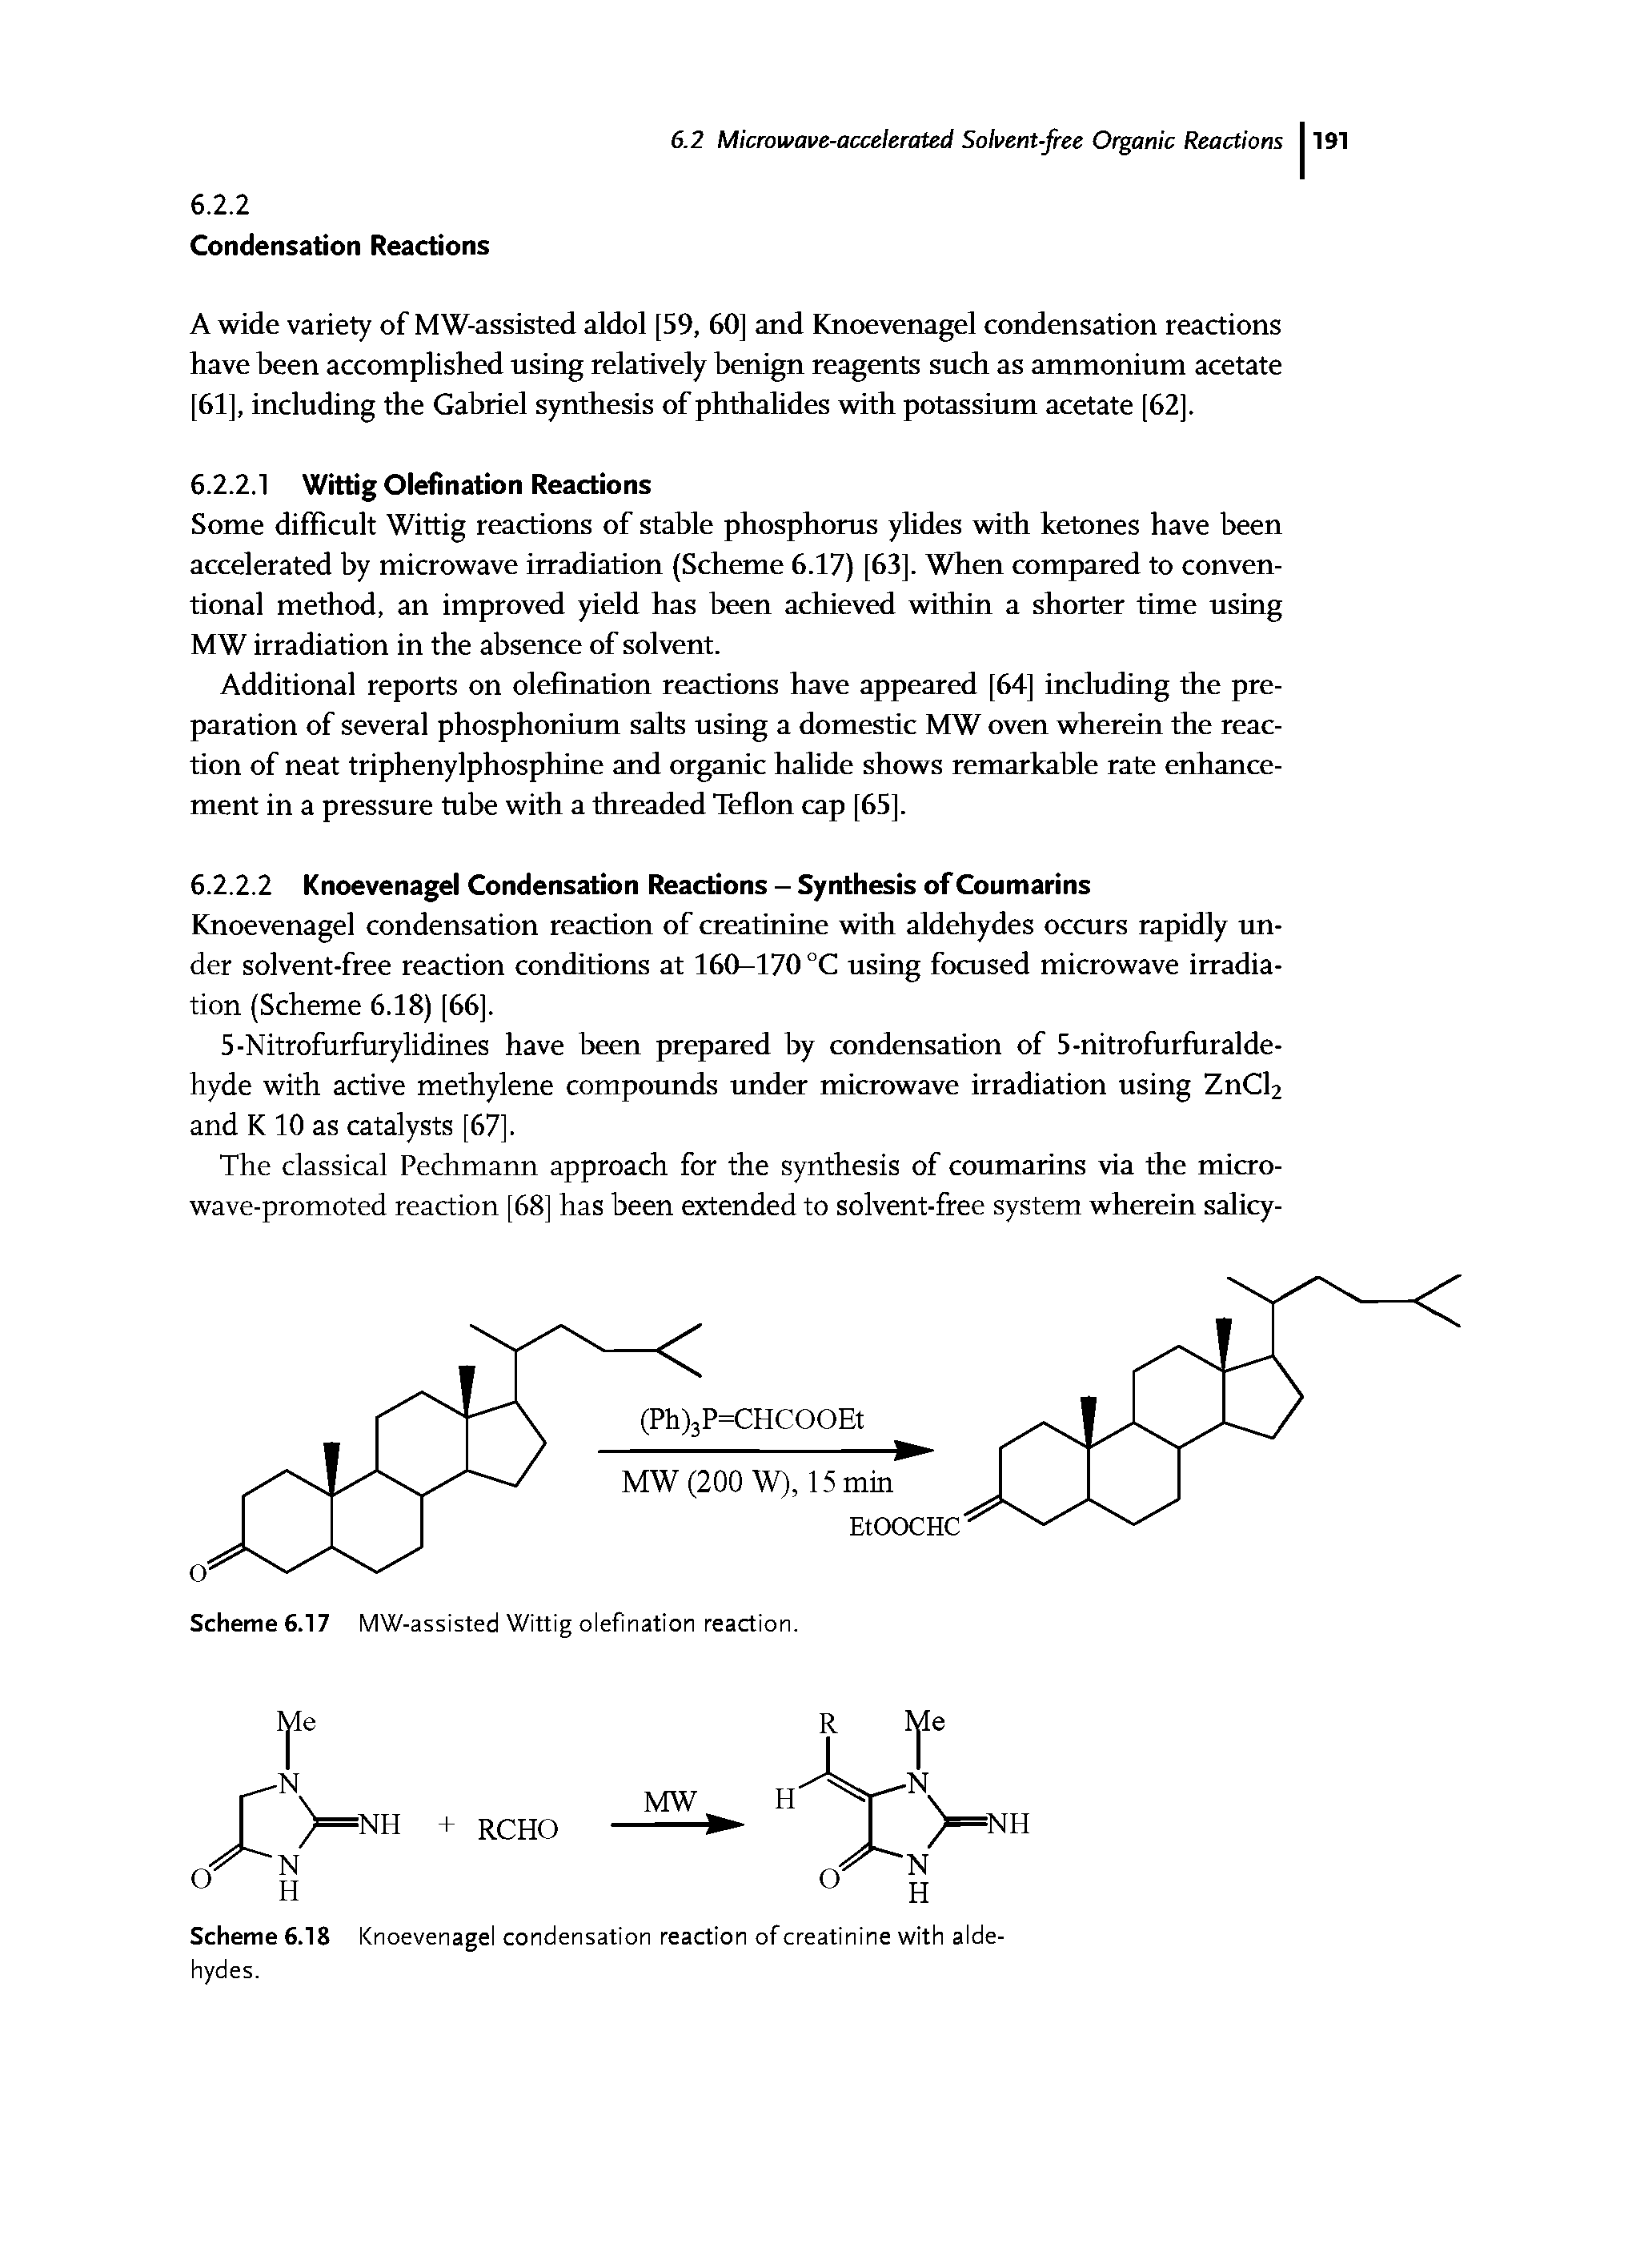 Scheme 6.18 Knoevenagel condensation reaction of creatinine with aldehydes.